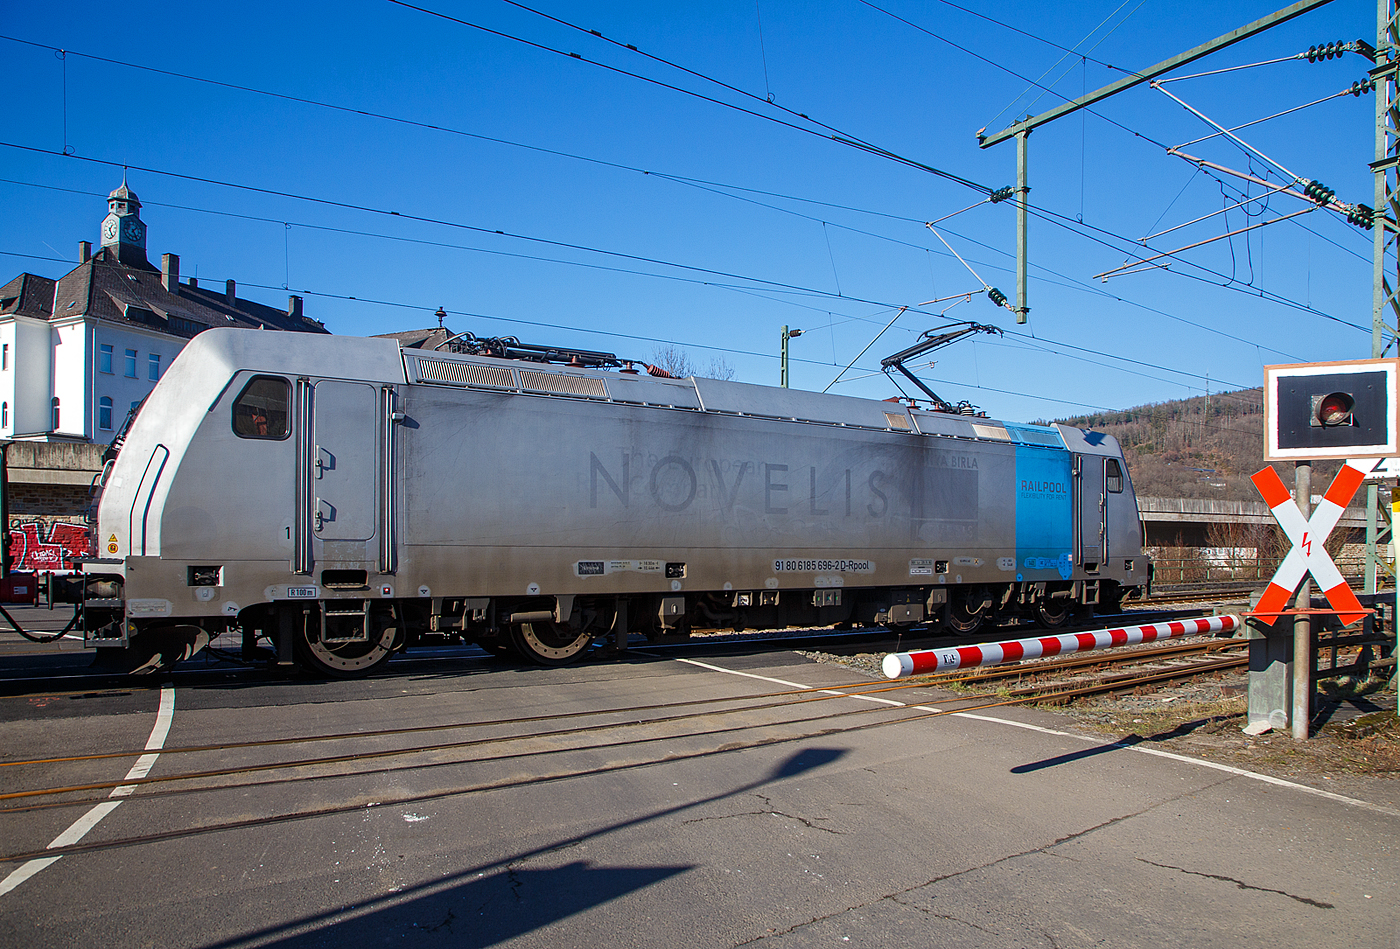 Nun sind die Schranken am Bü 343 geschlossen und sie hat Hp 1 oder 2...
Die 185 696-2 „Marie-Chanthou“ (91 80 6185 696-2 D-Rpool) der Railpool fährt am 14.02.2023 mit einem Druckgas-Kesselwagenzug über die Siegstrecke (KBS 460), durch Niederschelderhütte in Richtung Siegen.

Die TRAXX F140 AC2 wurde 2010 von Bombardier in Kassel unter der Fabriknummer 34722 gebaut und an die Railpool geliefert. Die Lok ist für Deutschland und Österreich zugelassen. Die ehemaligen Zulassungen für Schweden und Norwegen sind nun durchgestrichen.